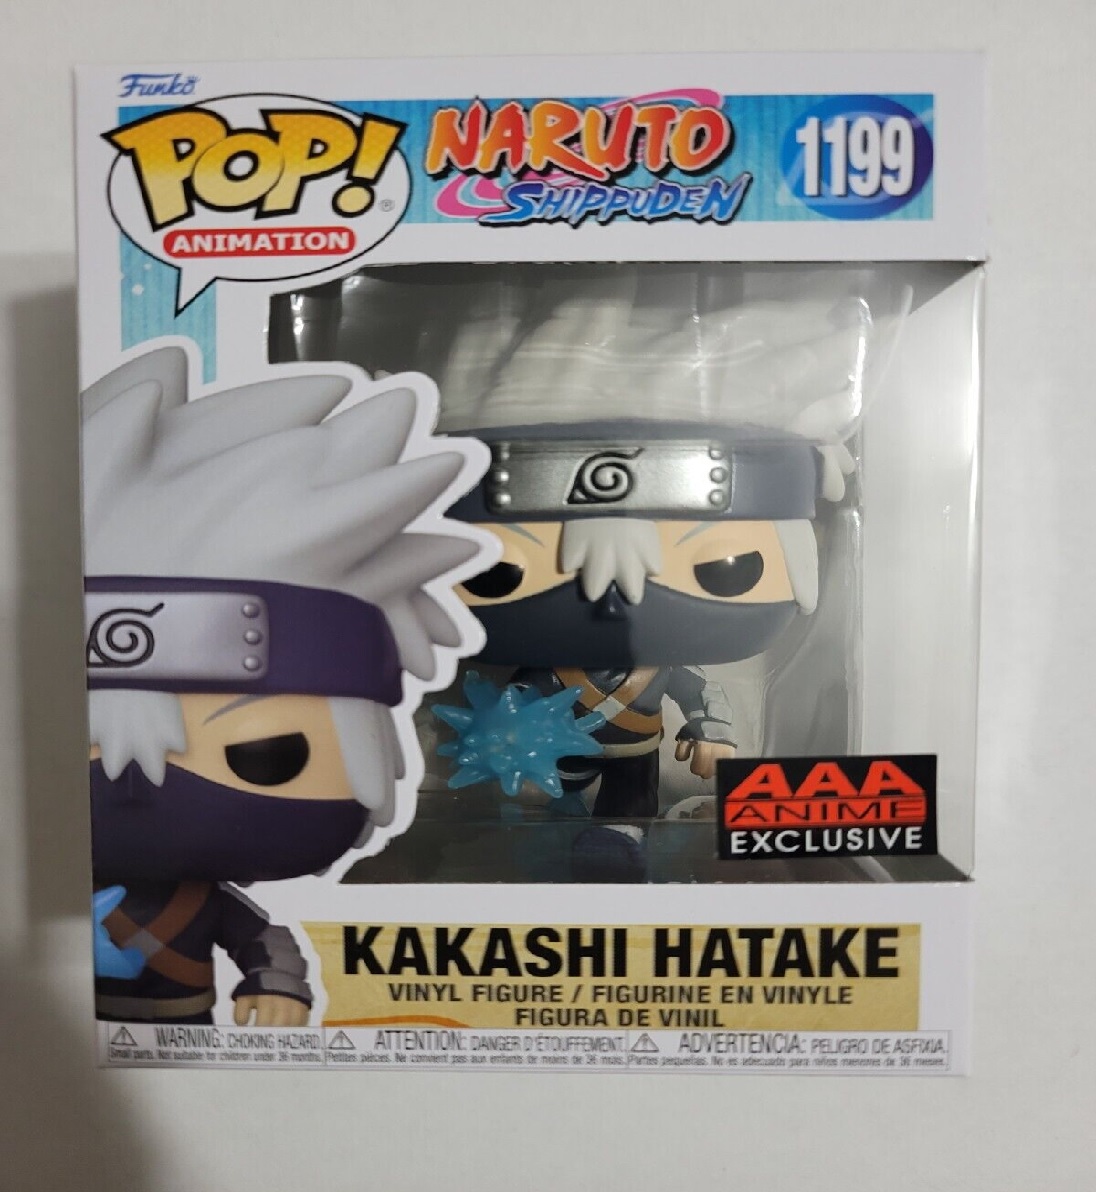 Funko Pop Naruto Shippuden - Kakashi Hatake Exclusive # 1199